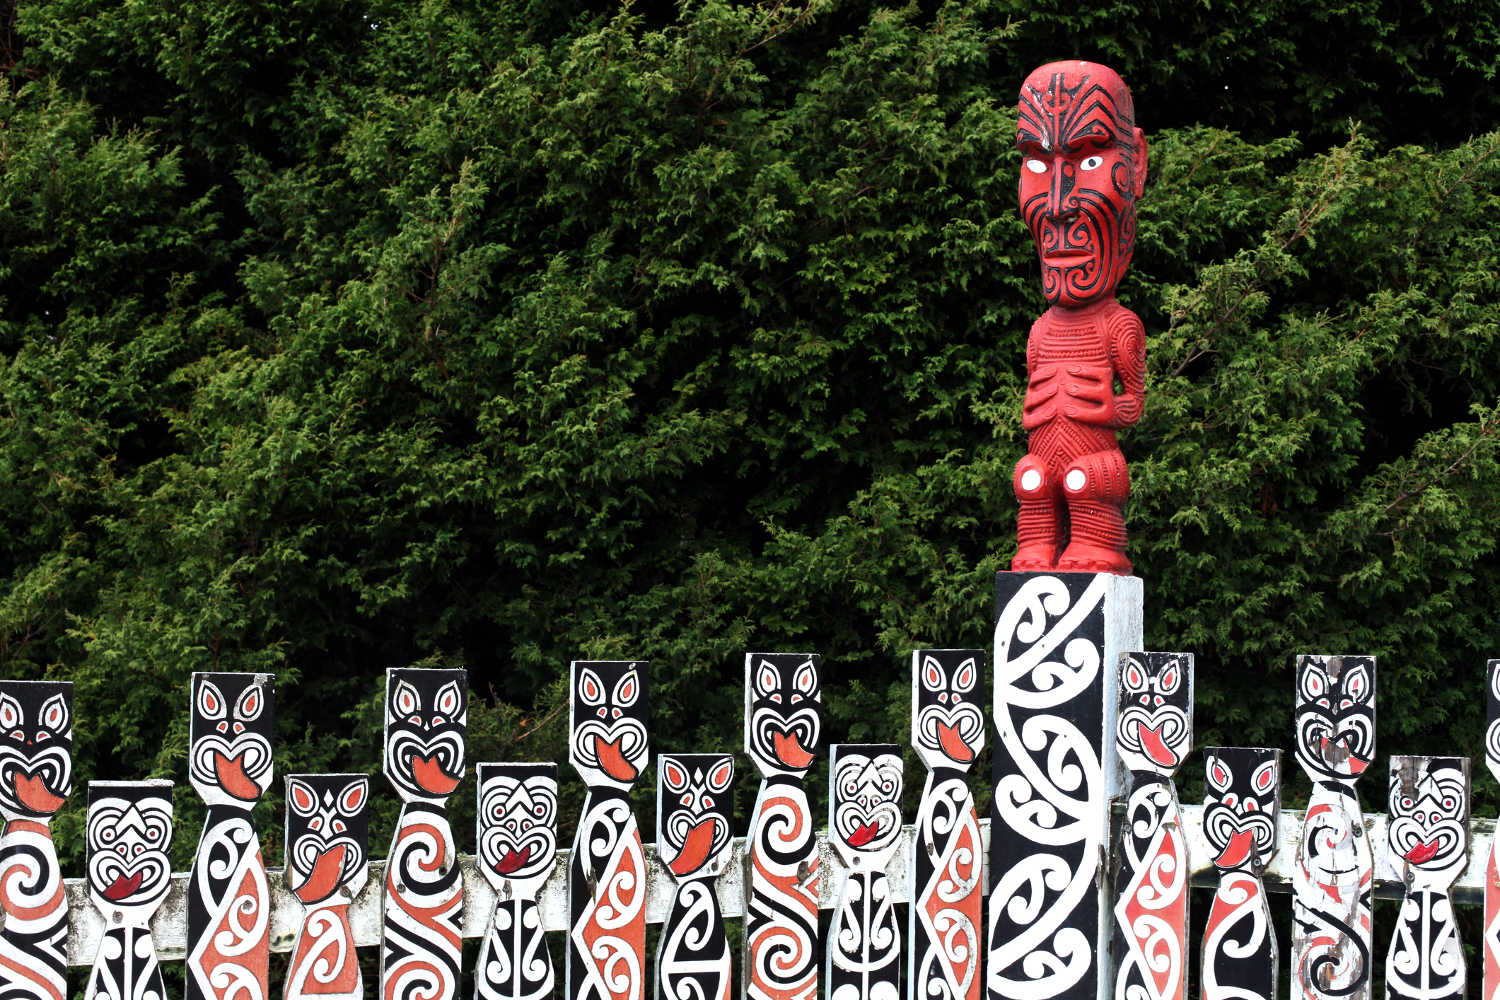 Maori carvings in Rotorua, North Island, New Zealand